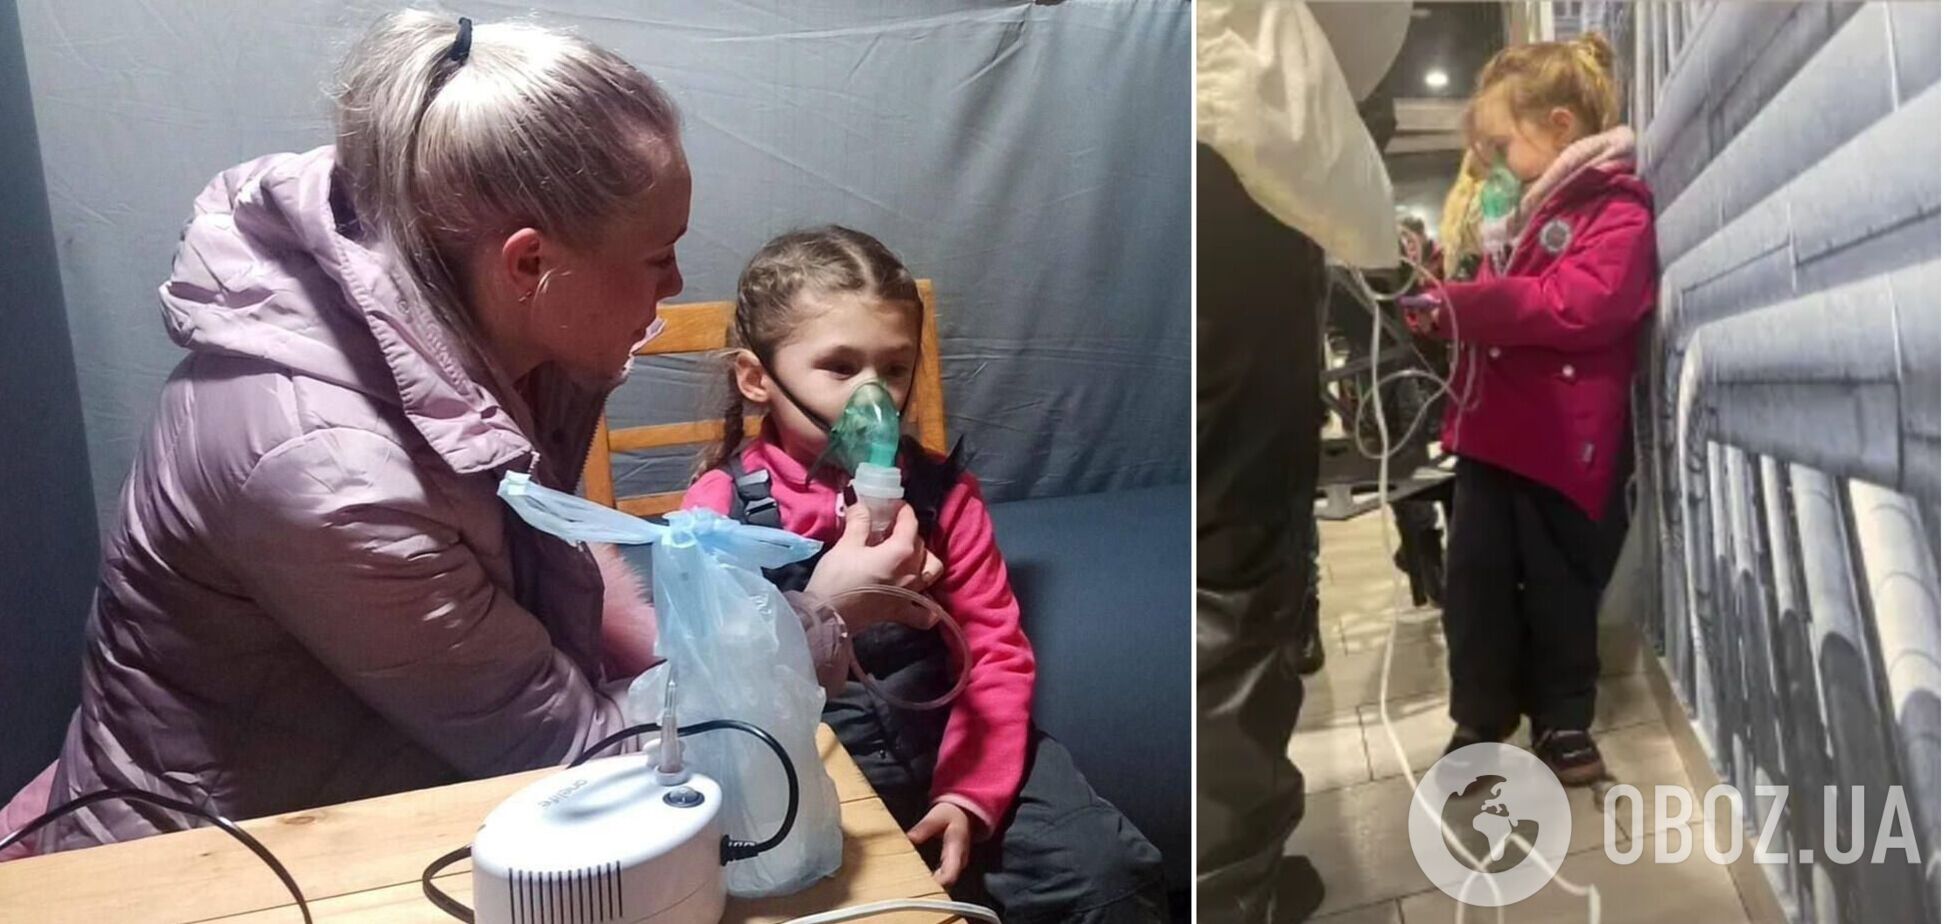 'Россия забрала детство': в Ирпене мама привела дочь в 'Пункт несокрушимости', чтобы подключить ингалятор. Фото